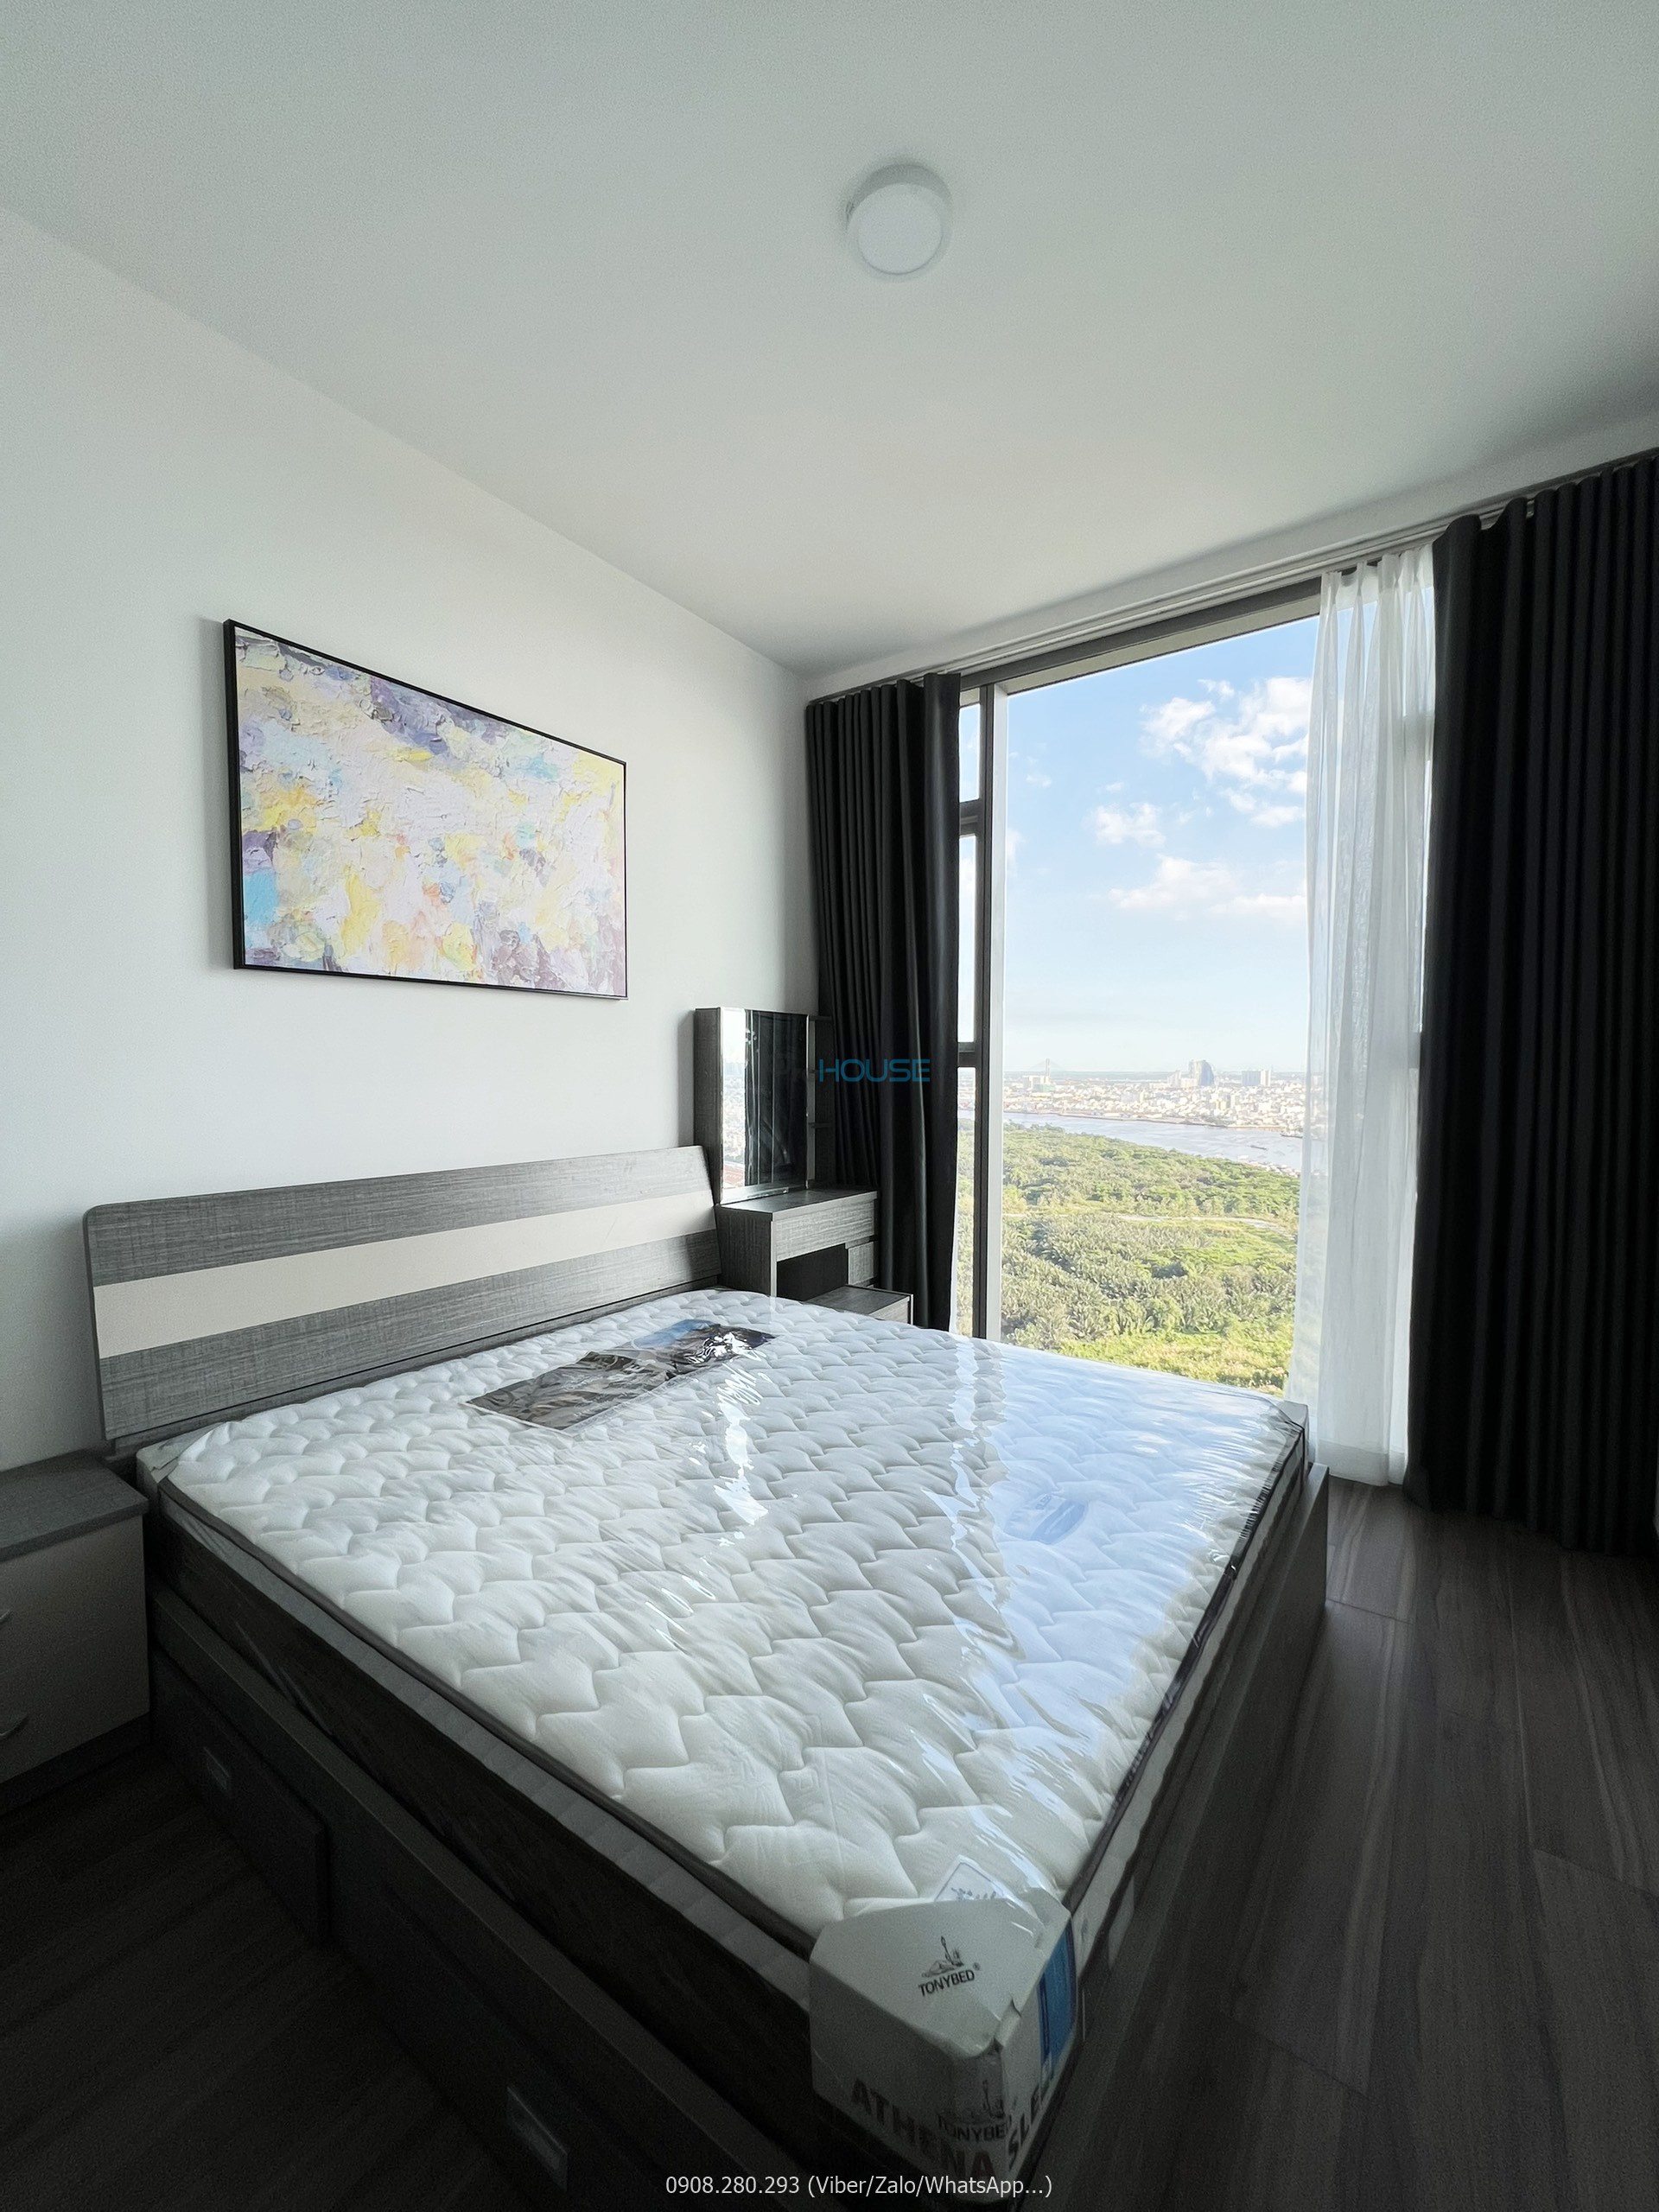 Căn hộ 2 phòng ngủ Tilia Residences lầu cao nội thất đẹp cho thuê